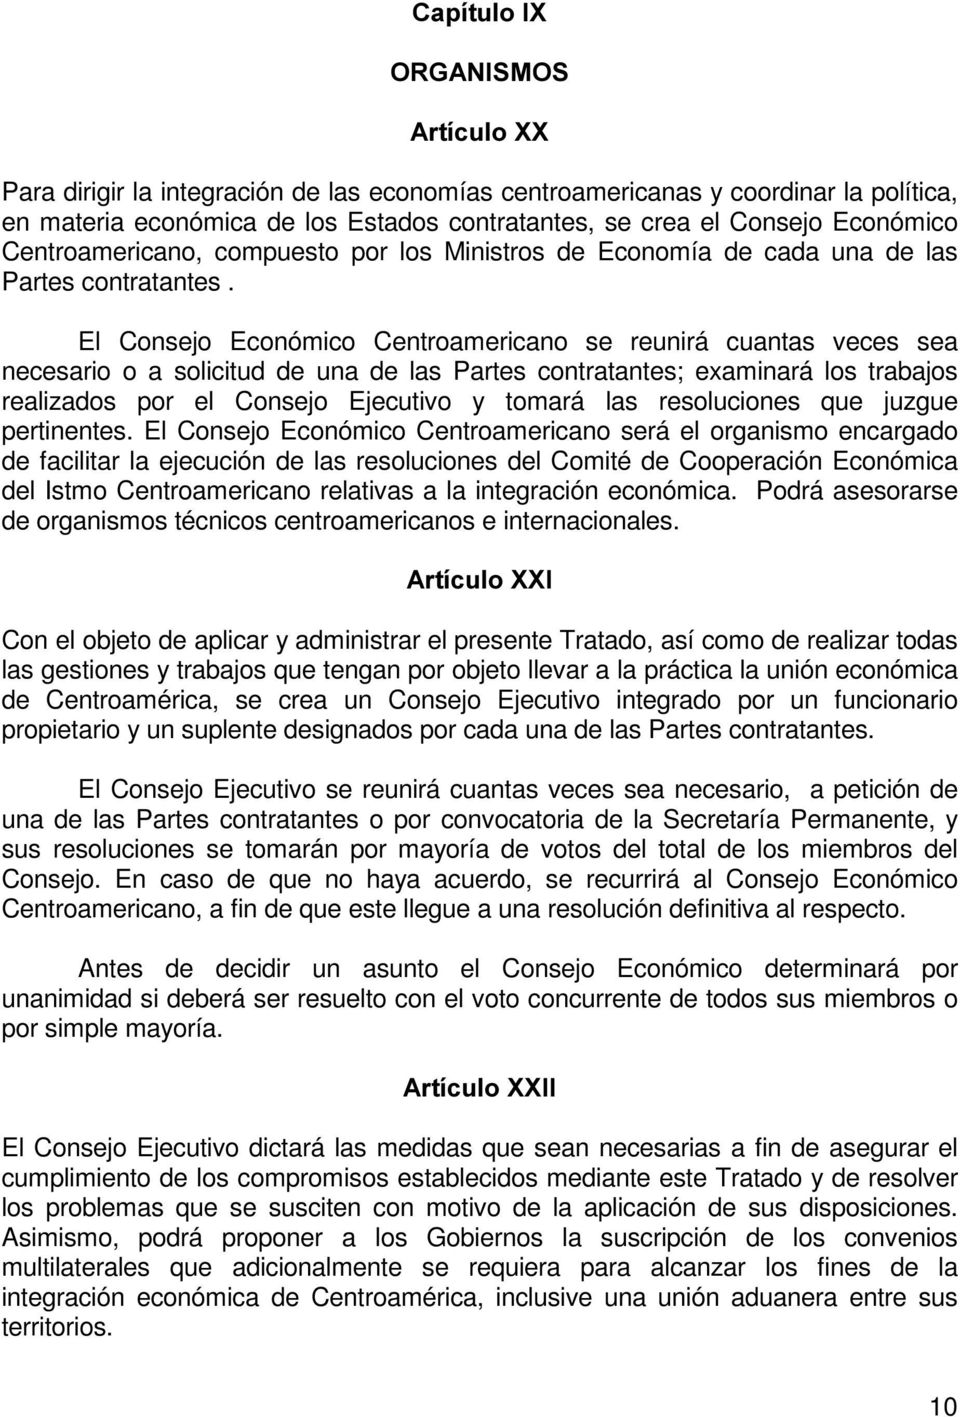 El Consejo Económico Centroamericano se reunirá cuantas veces sea necesario o a solicitud de una de las Partes contratantes; examinará los trabajos realizados por el Consejo Ejecutivo y tomará las